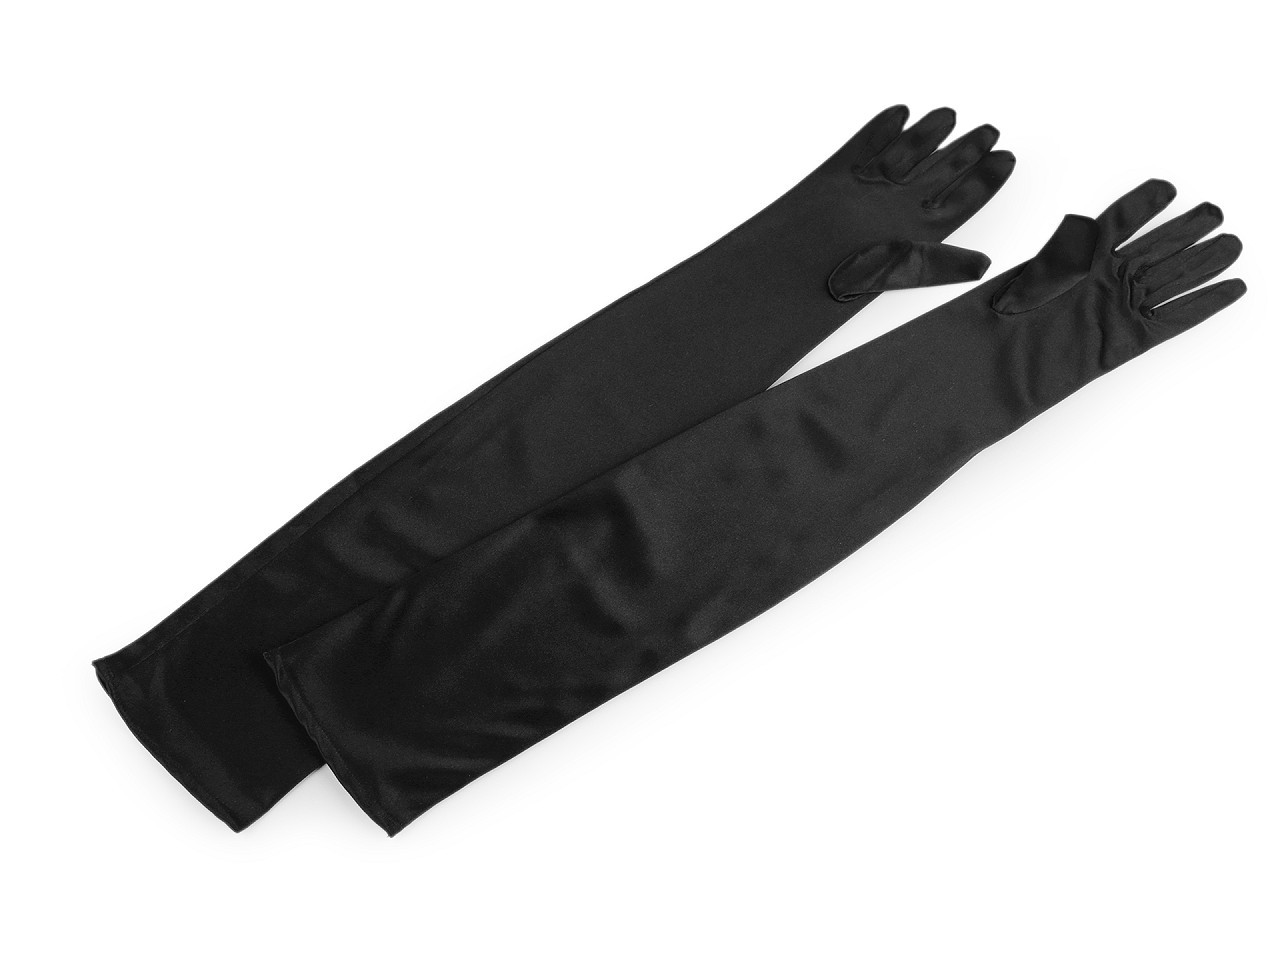 Dlouhé společenské rukavice saténové, barva 2 černá